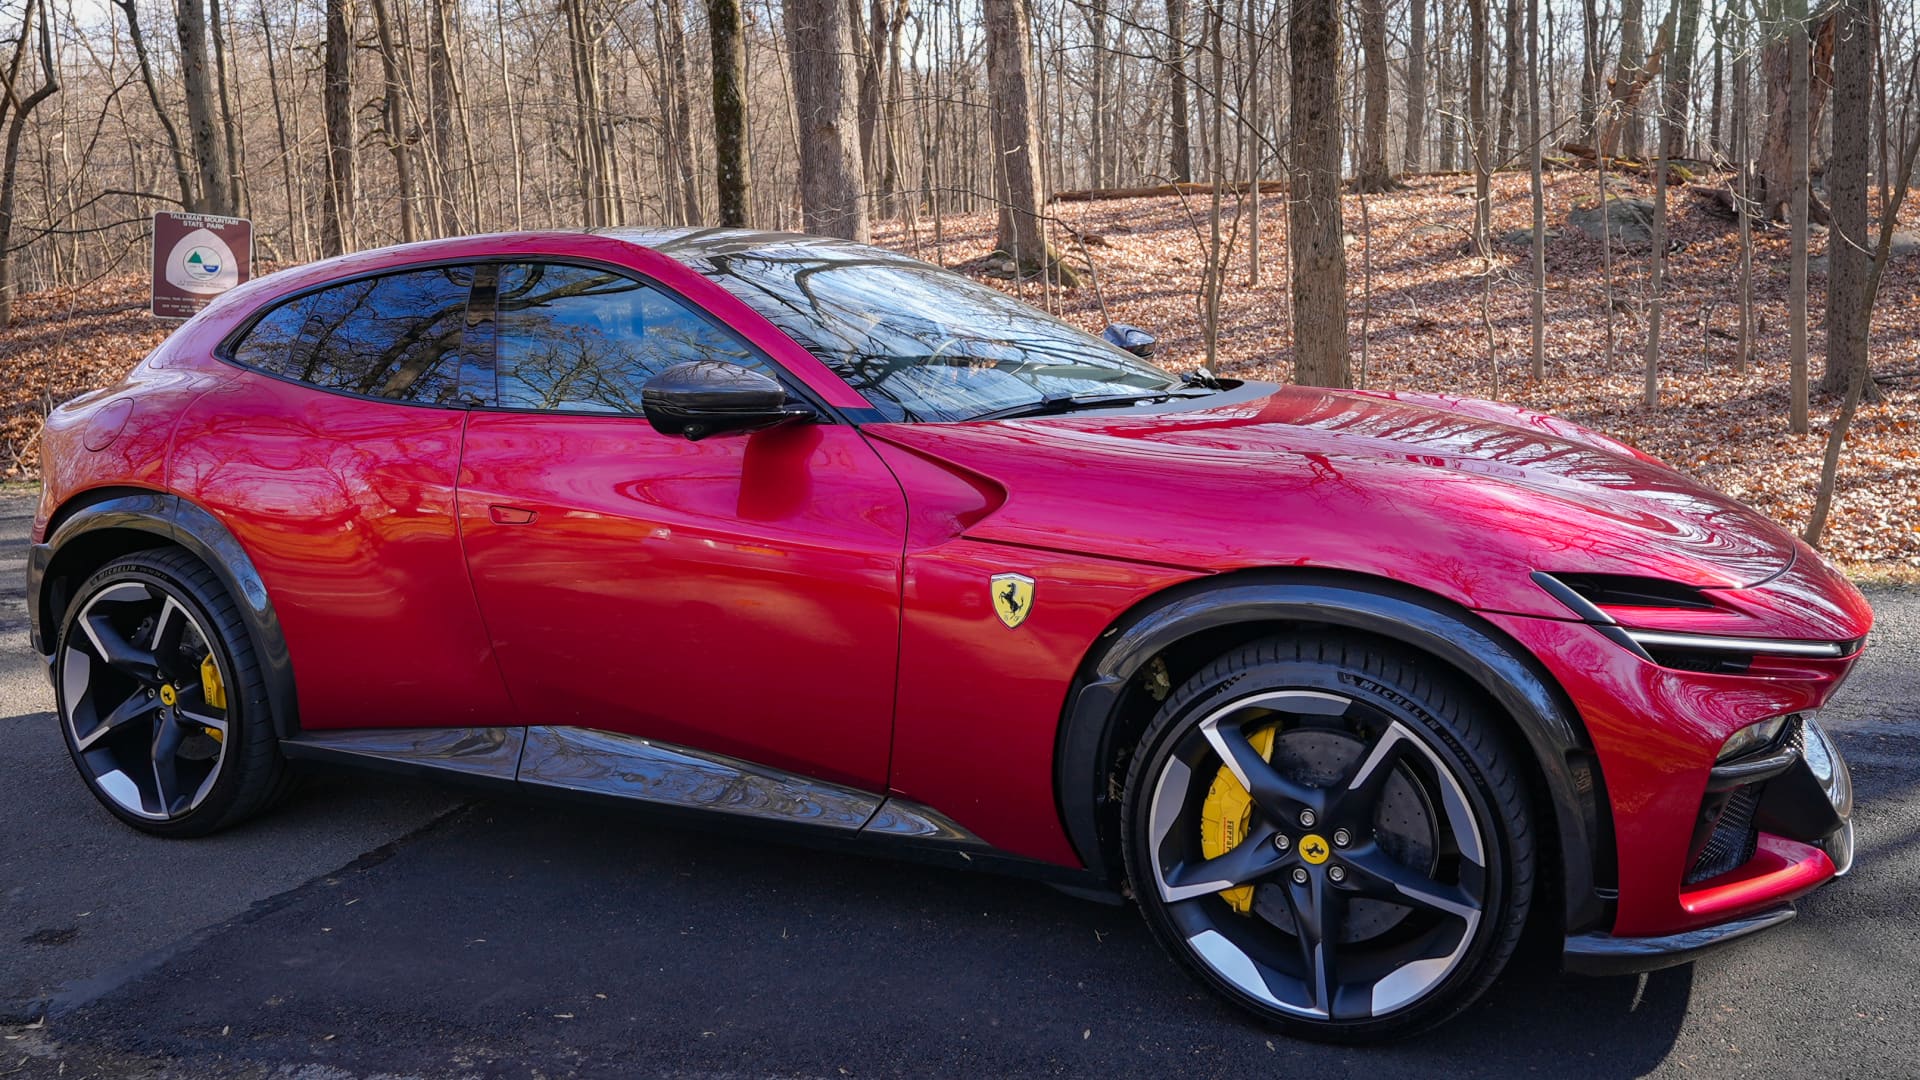 Ferrari's $400,000 Purosangue is a dream to drive. Just don't call it an SUV